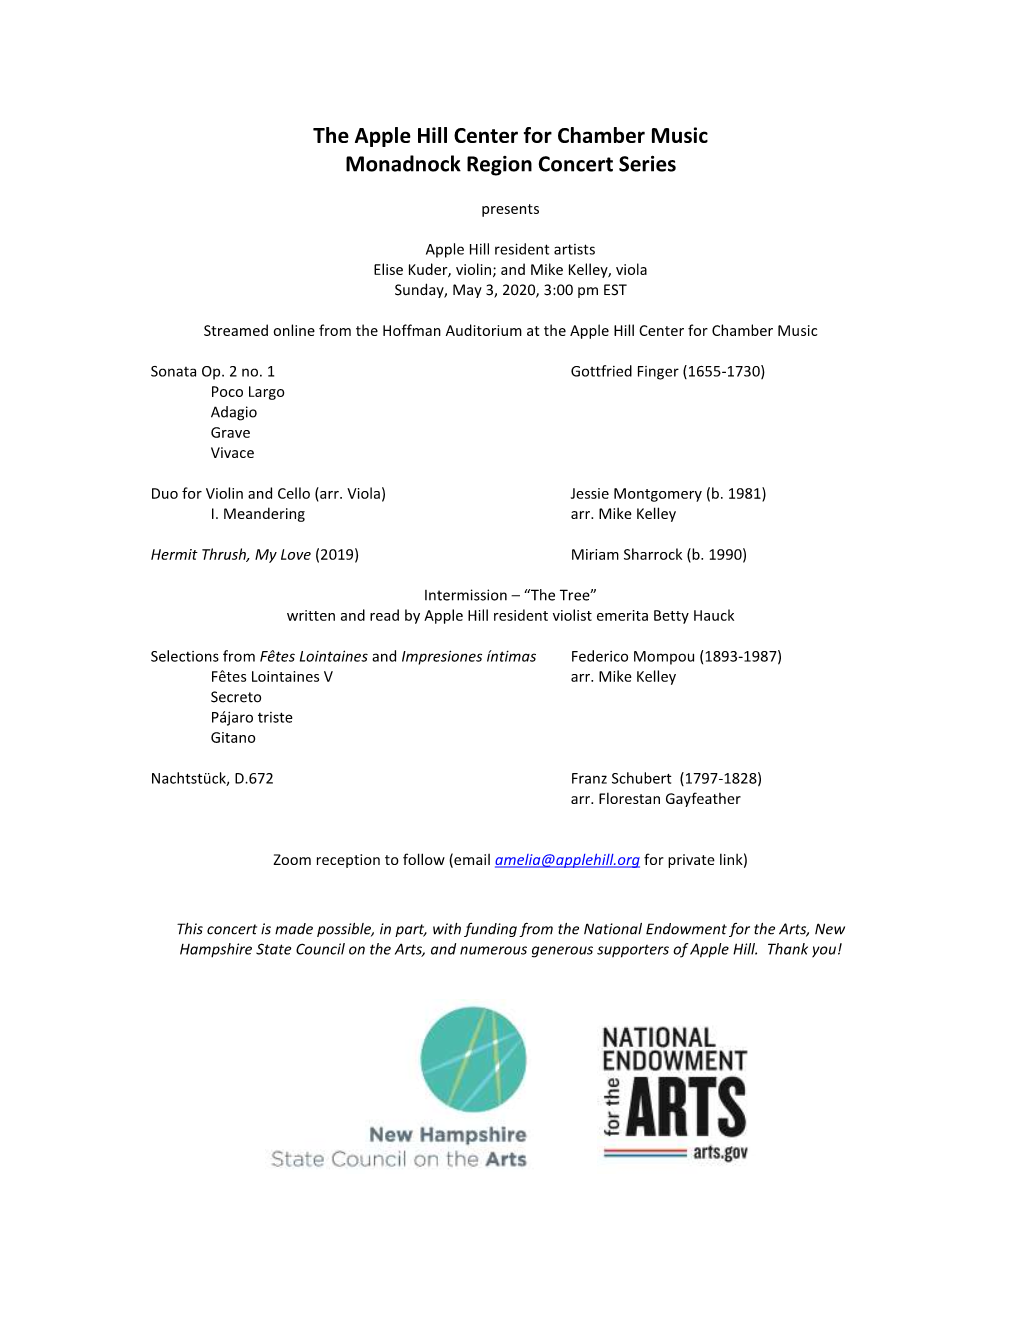 The Apple Hill Center for Chamber Music Monadnock Region Concert Series